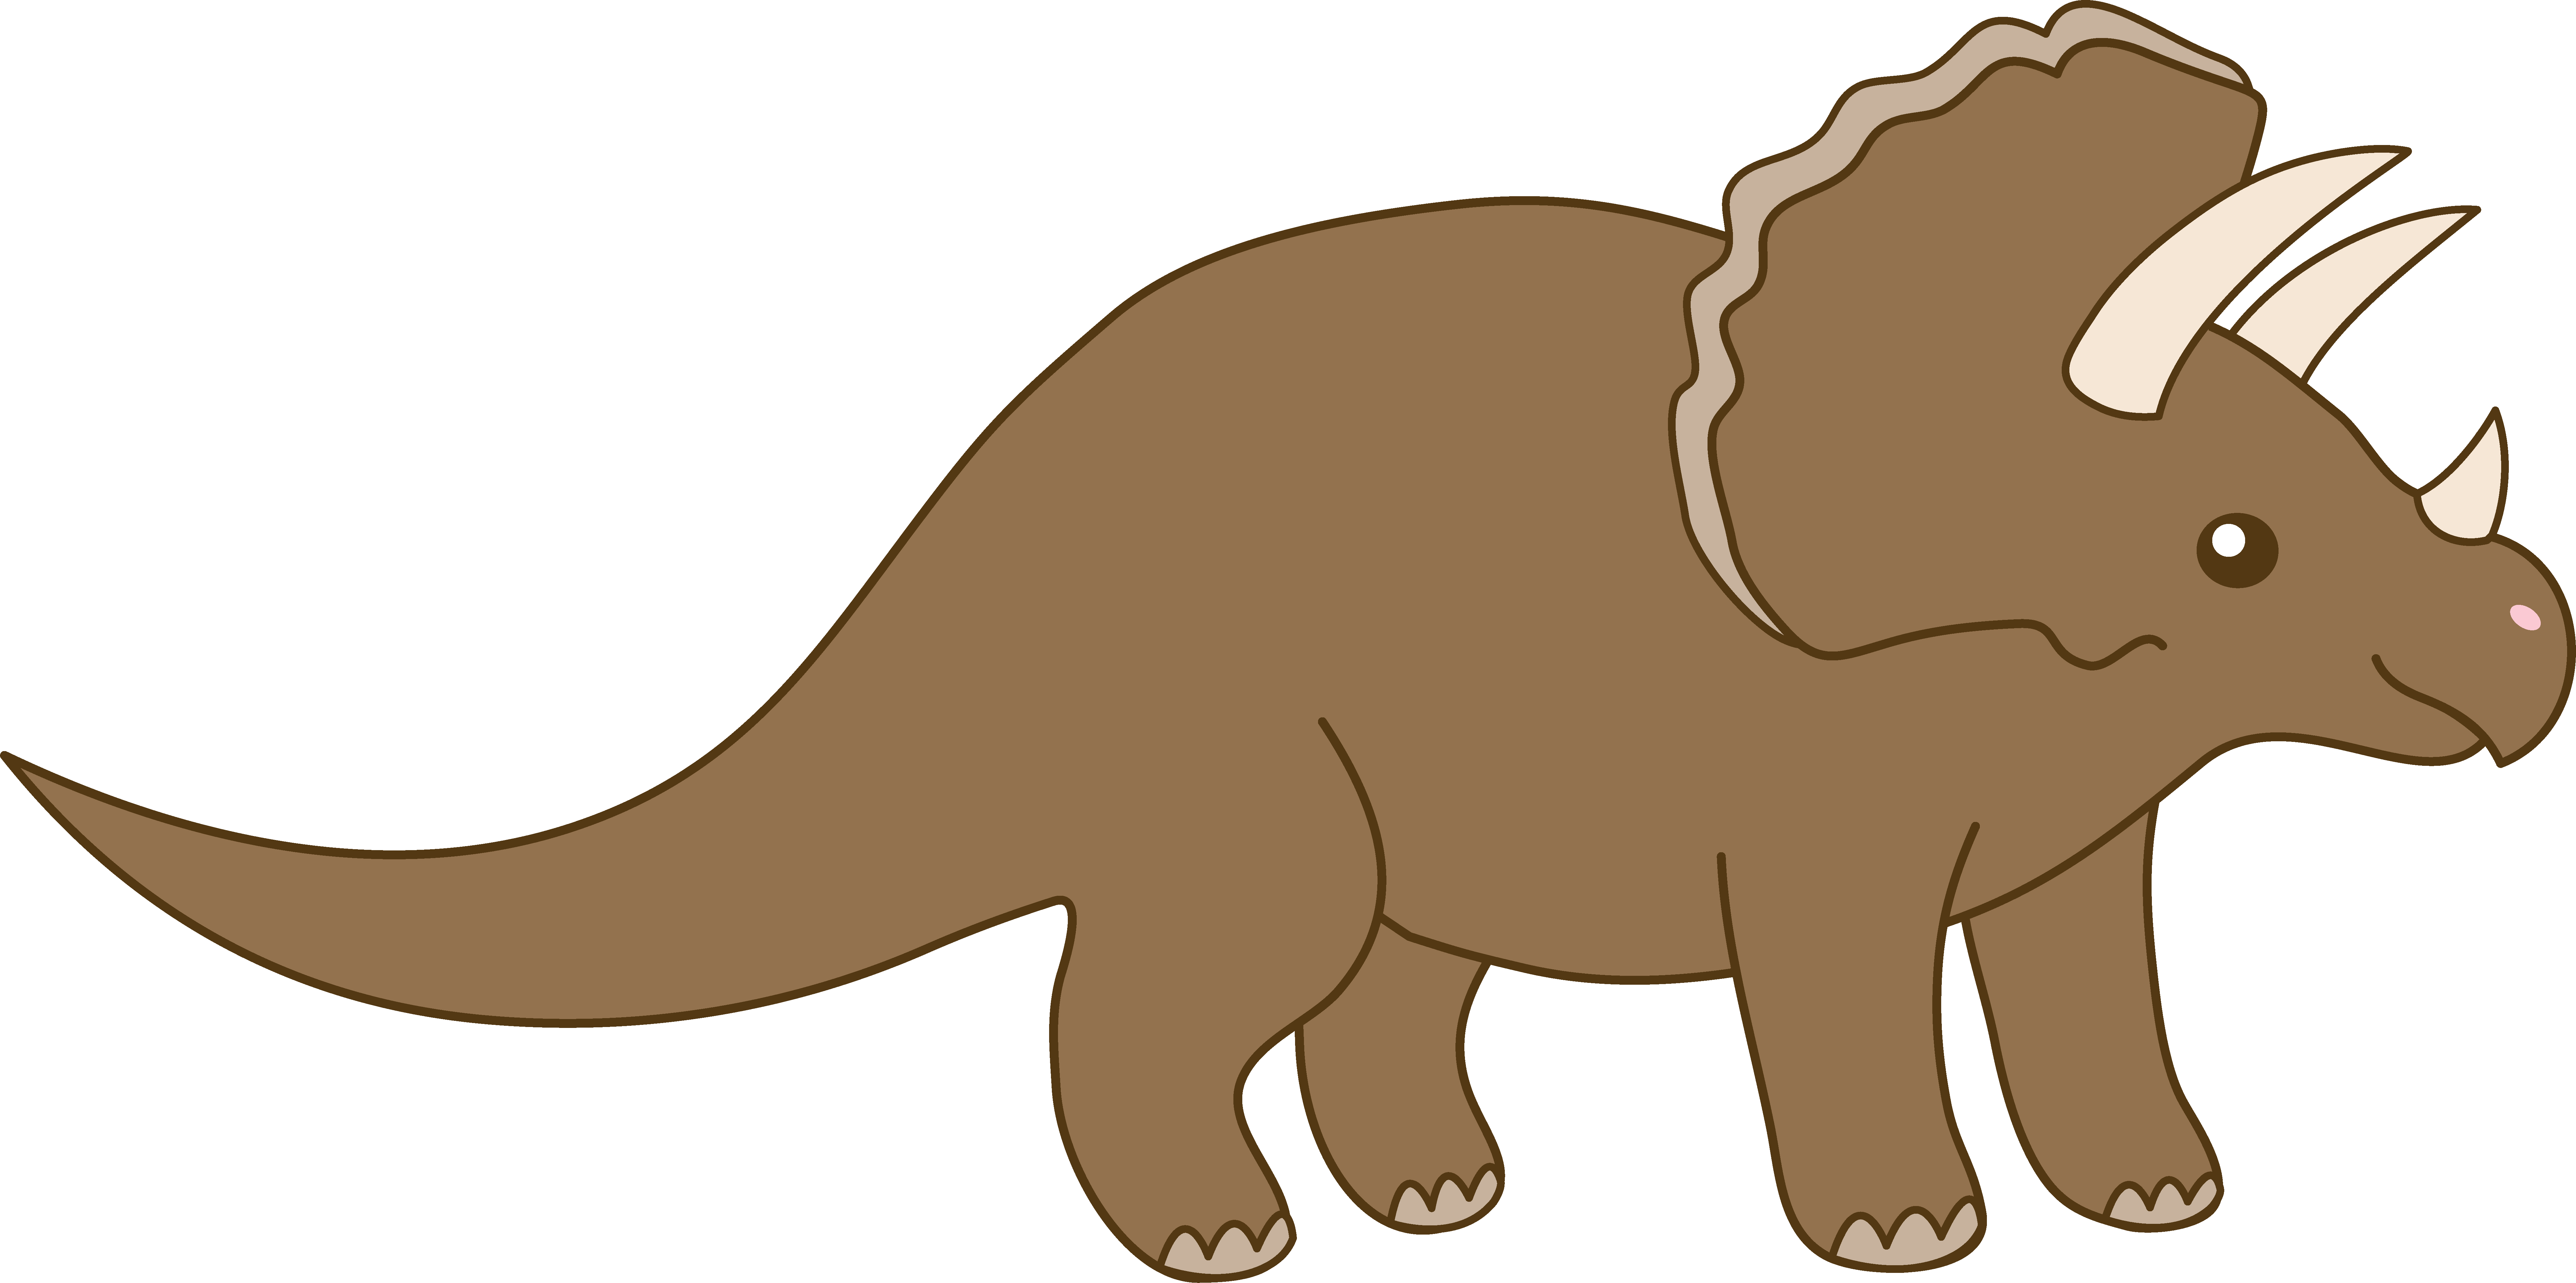 Cartoon Triceratops Illustration